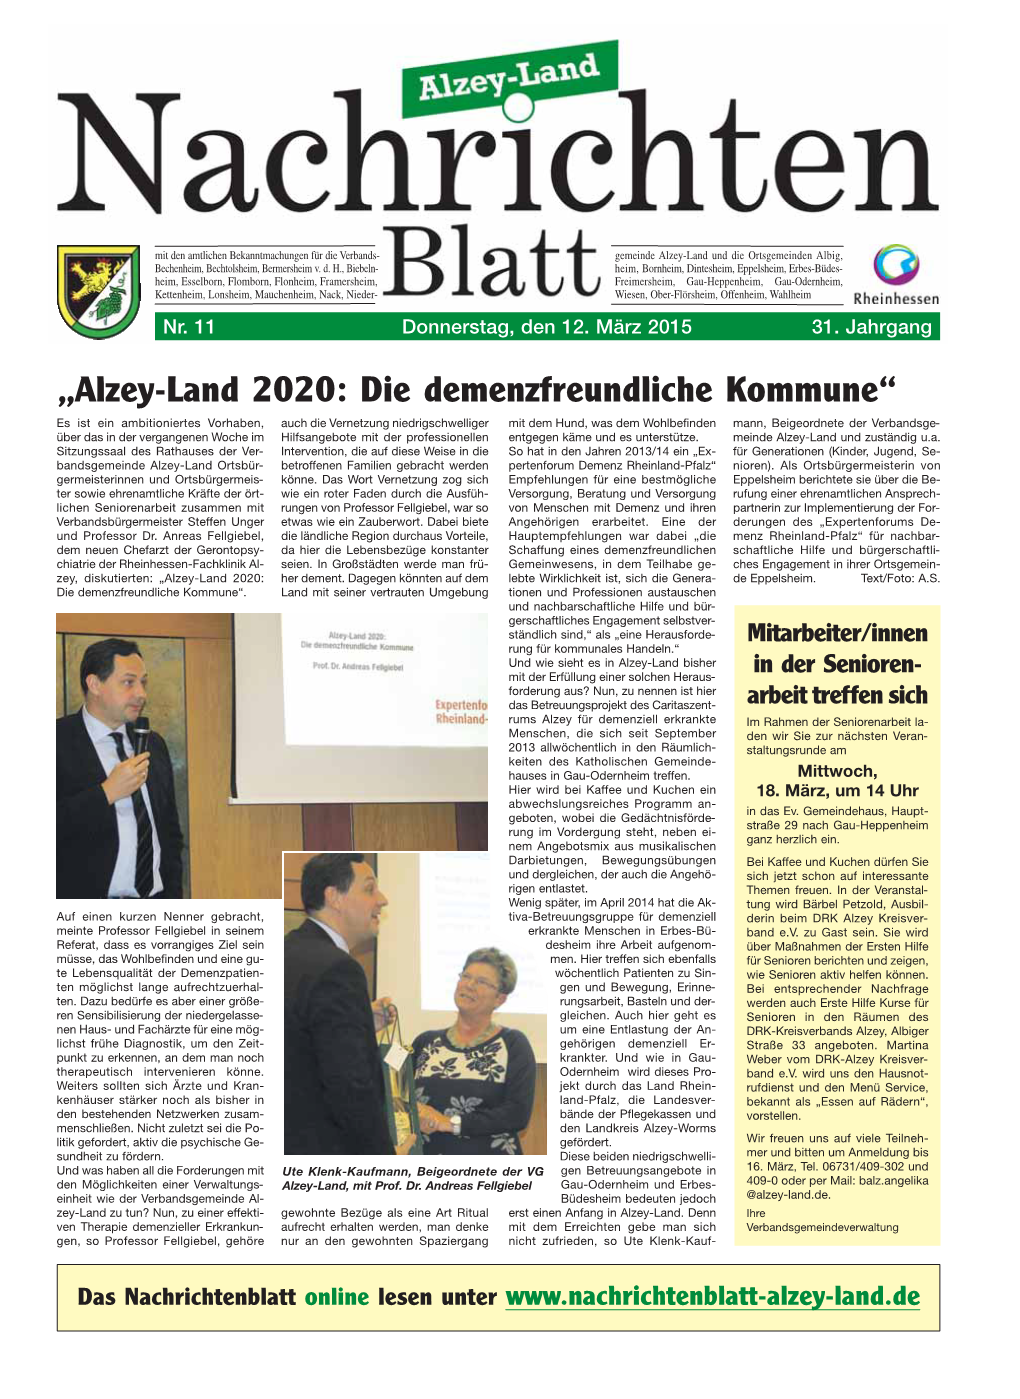 „Alzey-Land 2020: Die Demenzfreundliche Kommune“